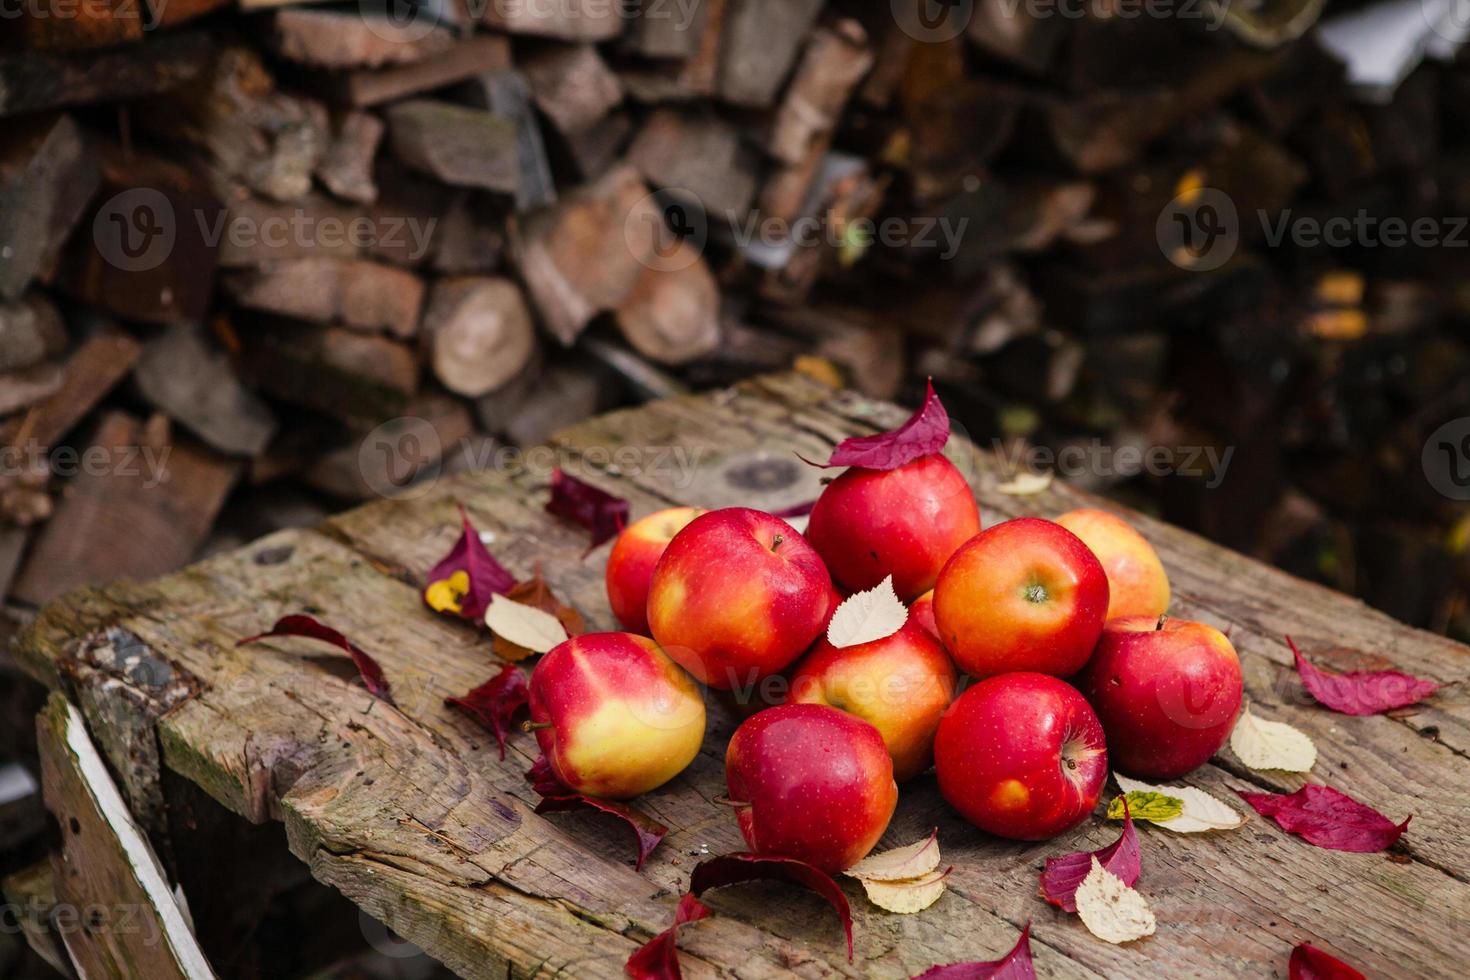 natureza morta com várias maçãs vermelhas sobre uma velha mesa de madeira foto